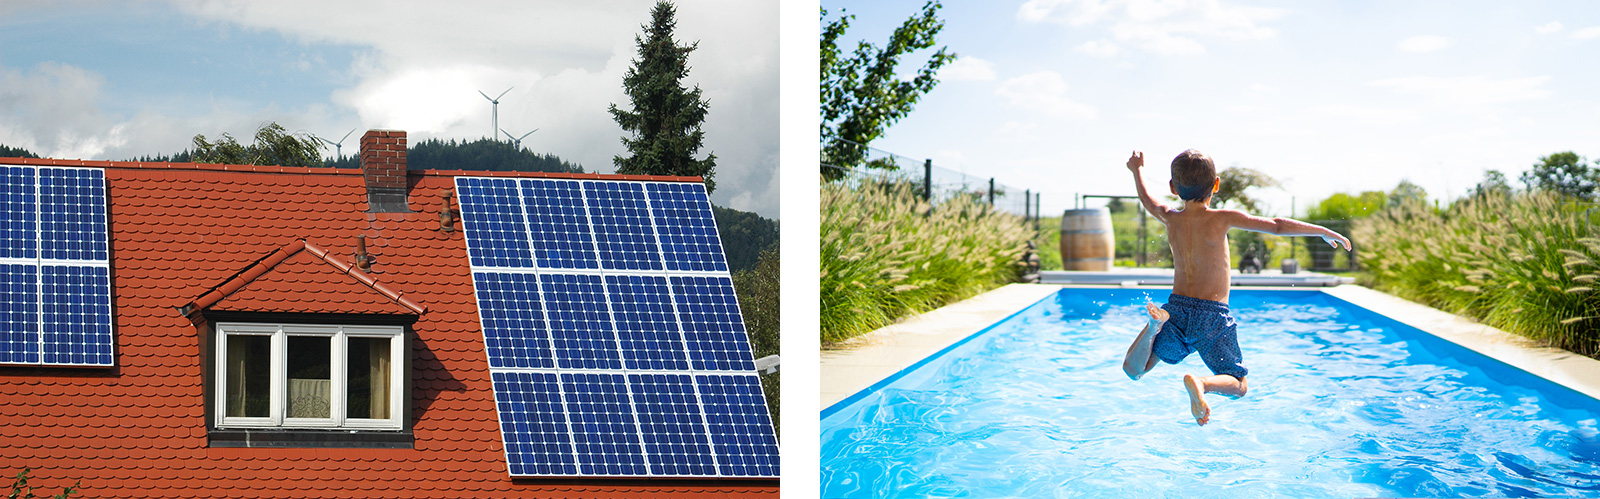 Zusatzleistungen: Mitversicherung von Photovoltaikanlagen, Schwimmbecken